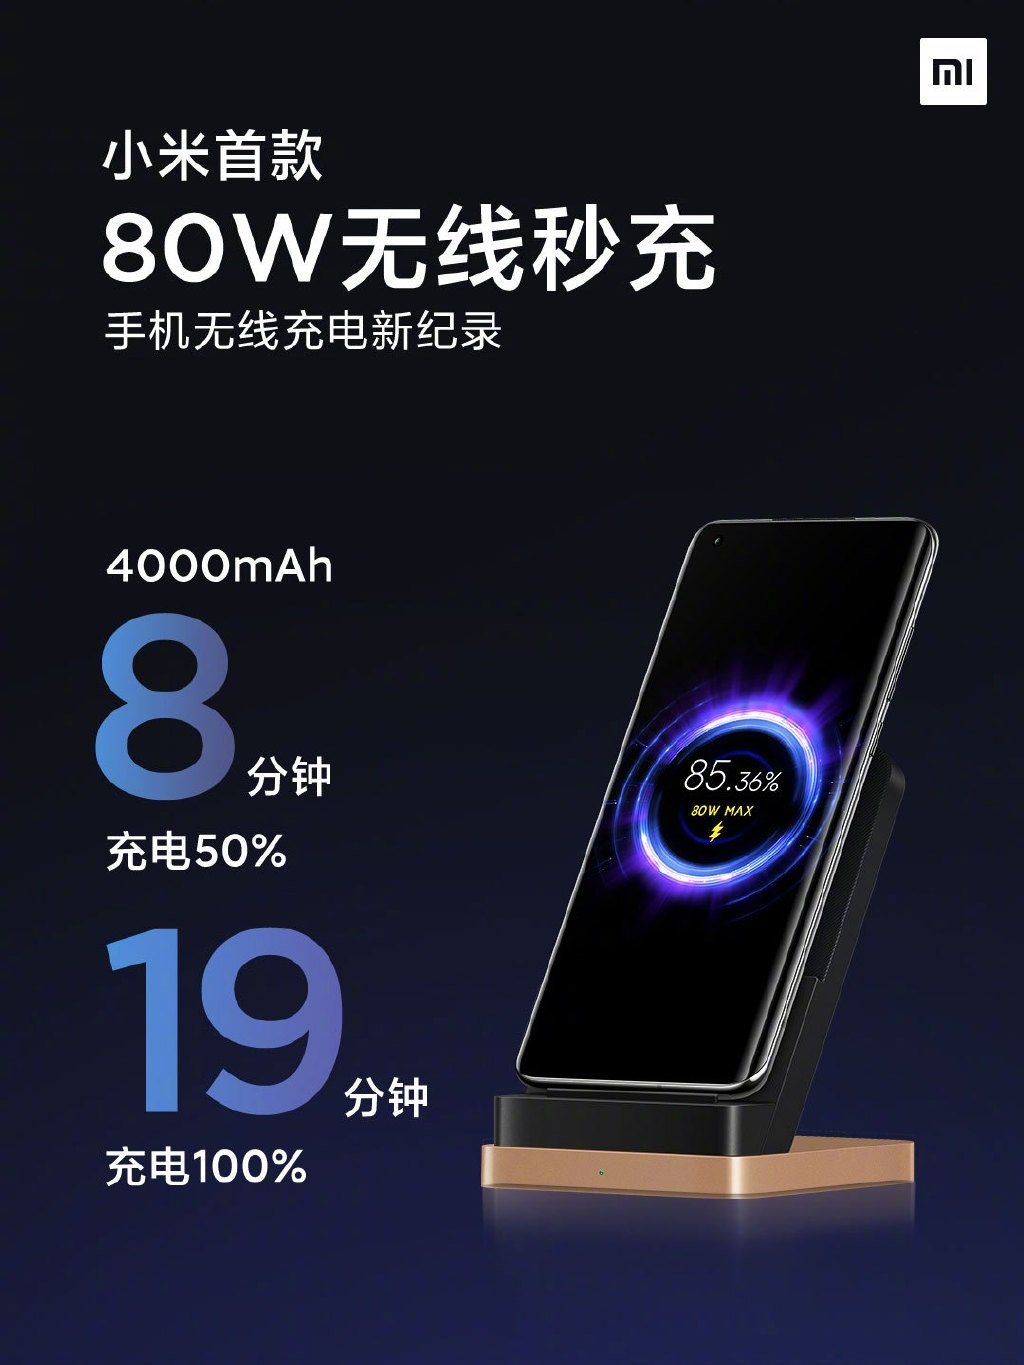 Xiaomi 80W Wireless Charging